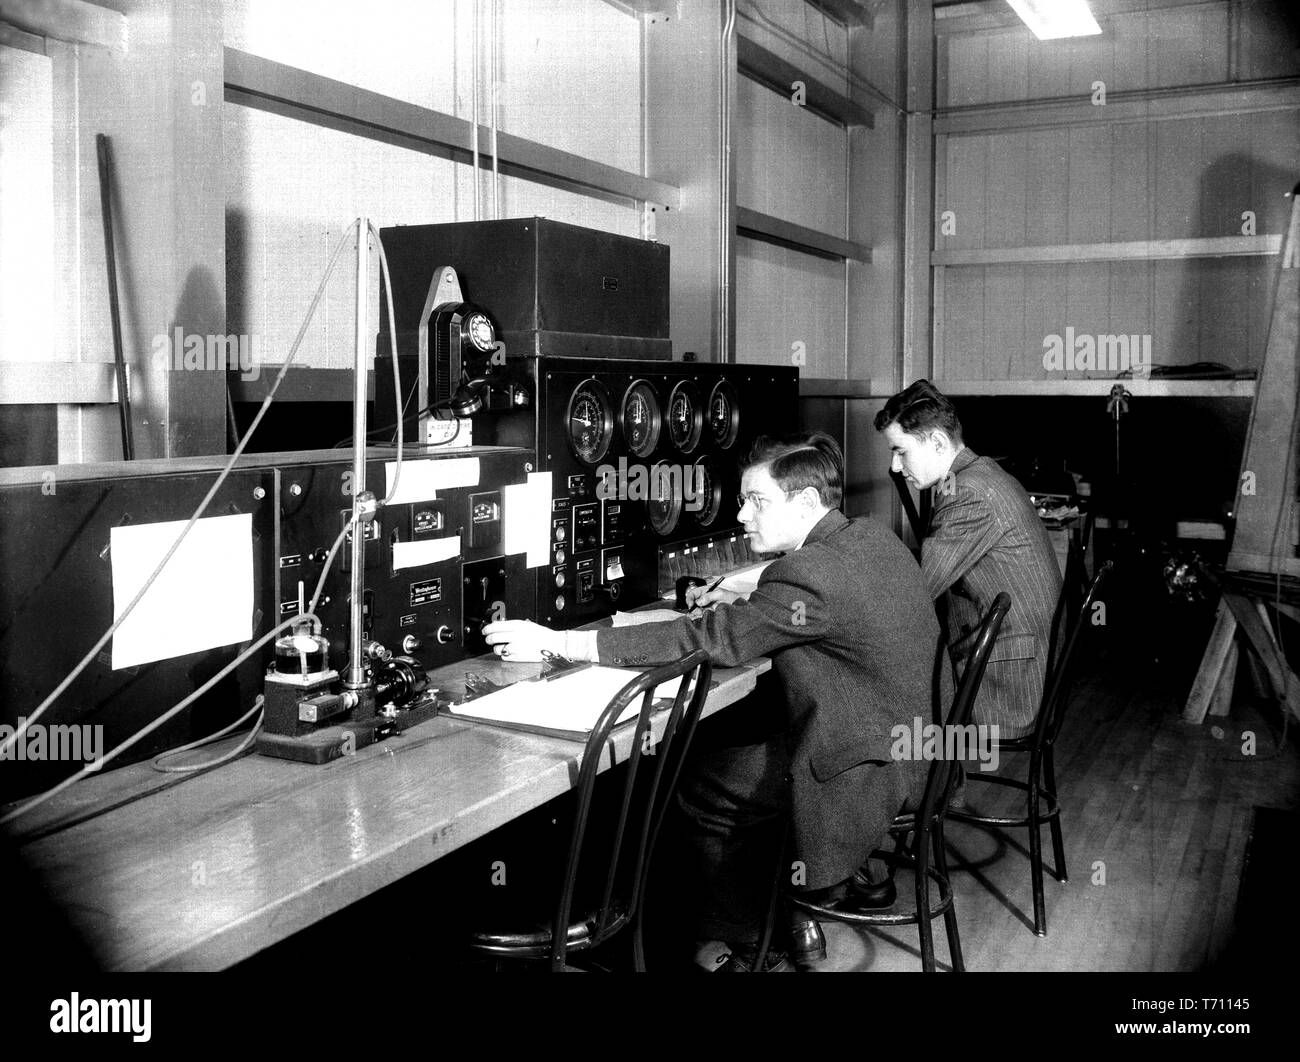 Ingegneri di azionare i comandi del Tunnel di stabilità a Langley Aeronautical Laboratory in Hampton, Virginia, Marzo 10, 1943. Immagine cortesia Nazionale Aeronautica e Spaziale Administration (NASA). () Foto Stock